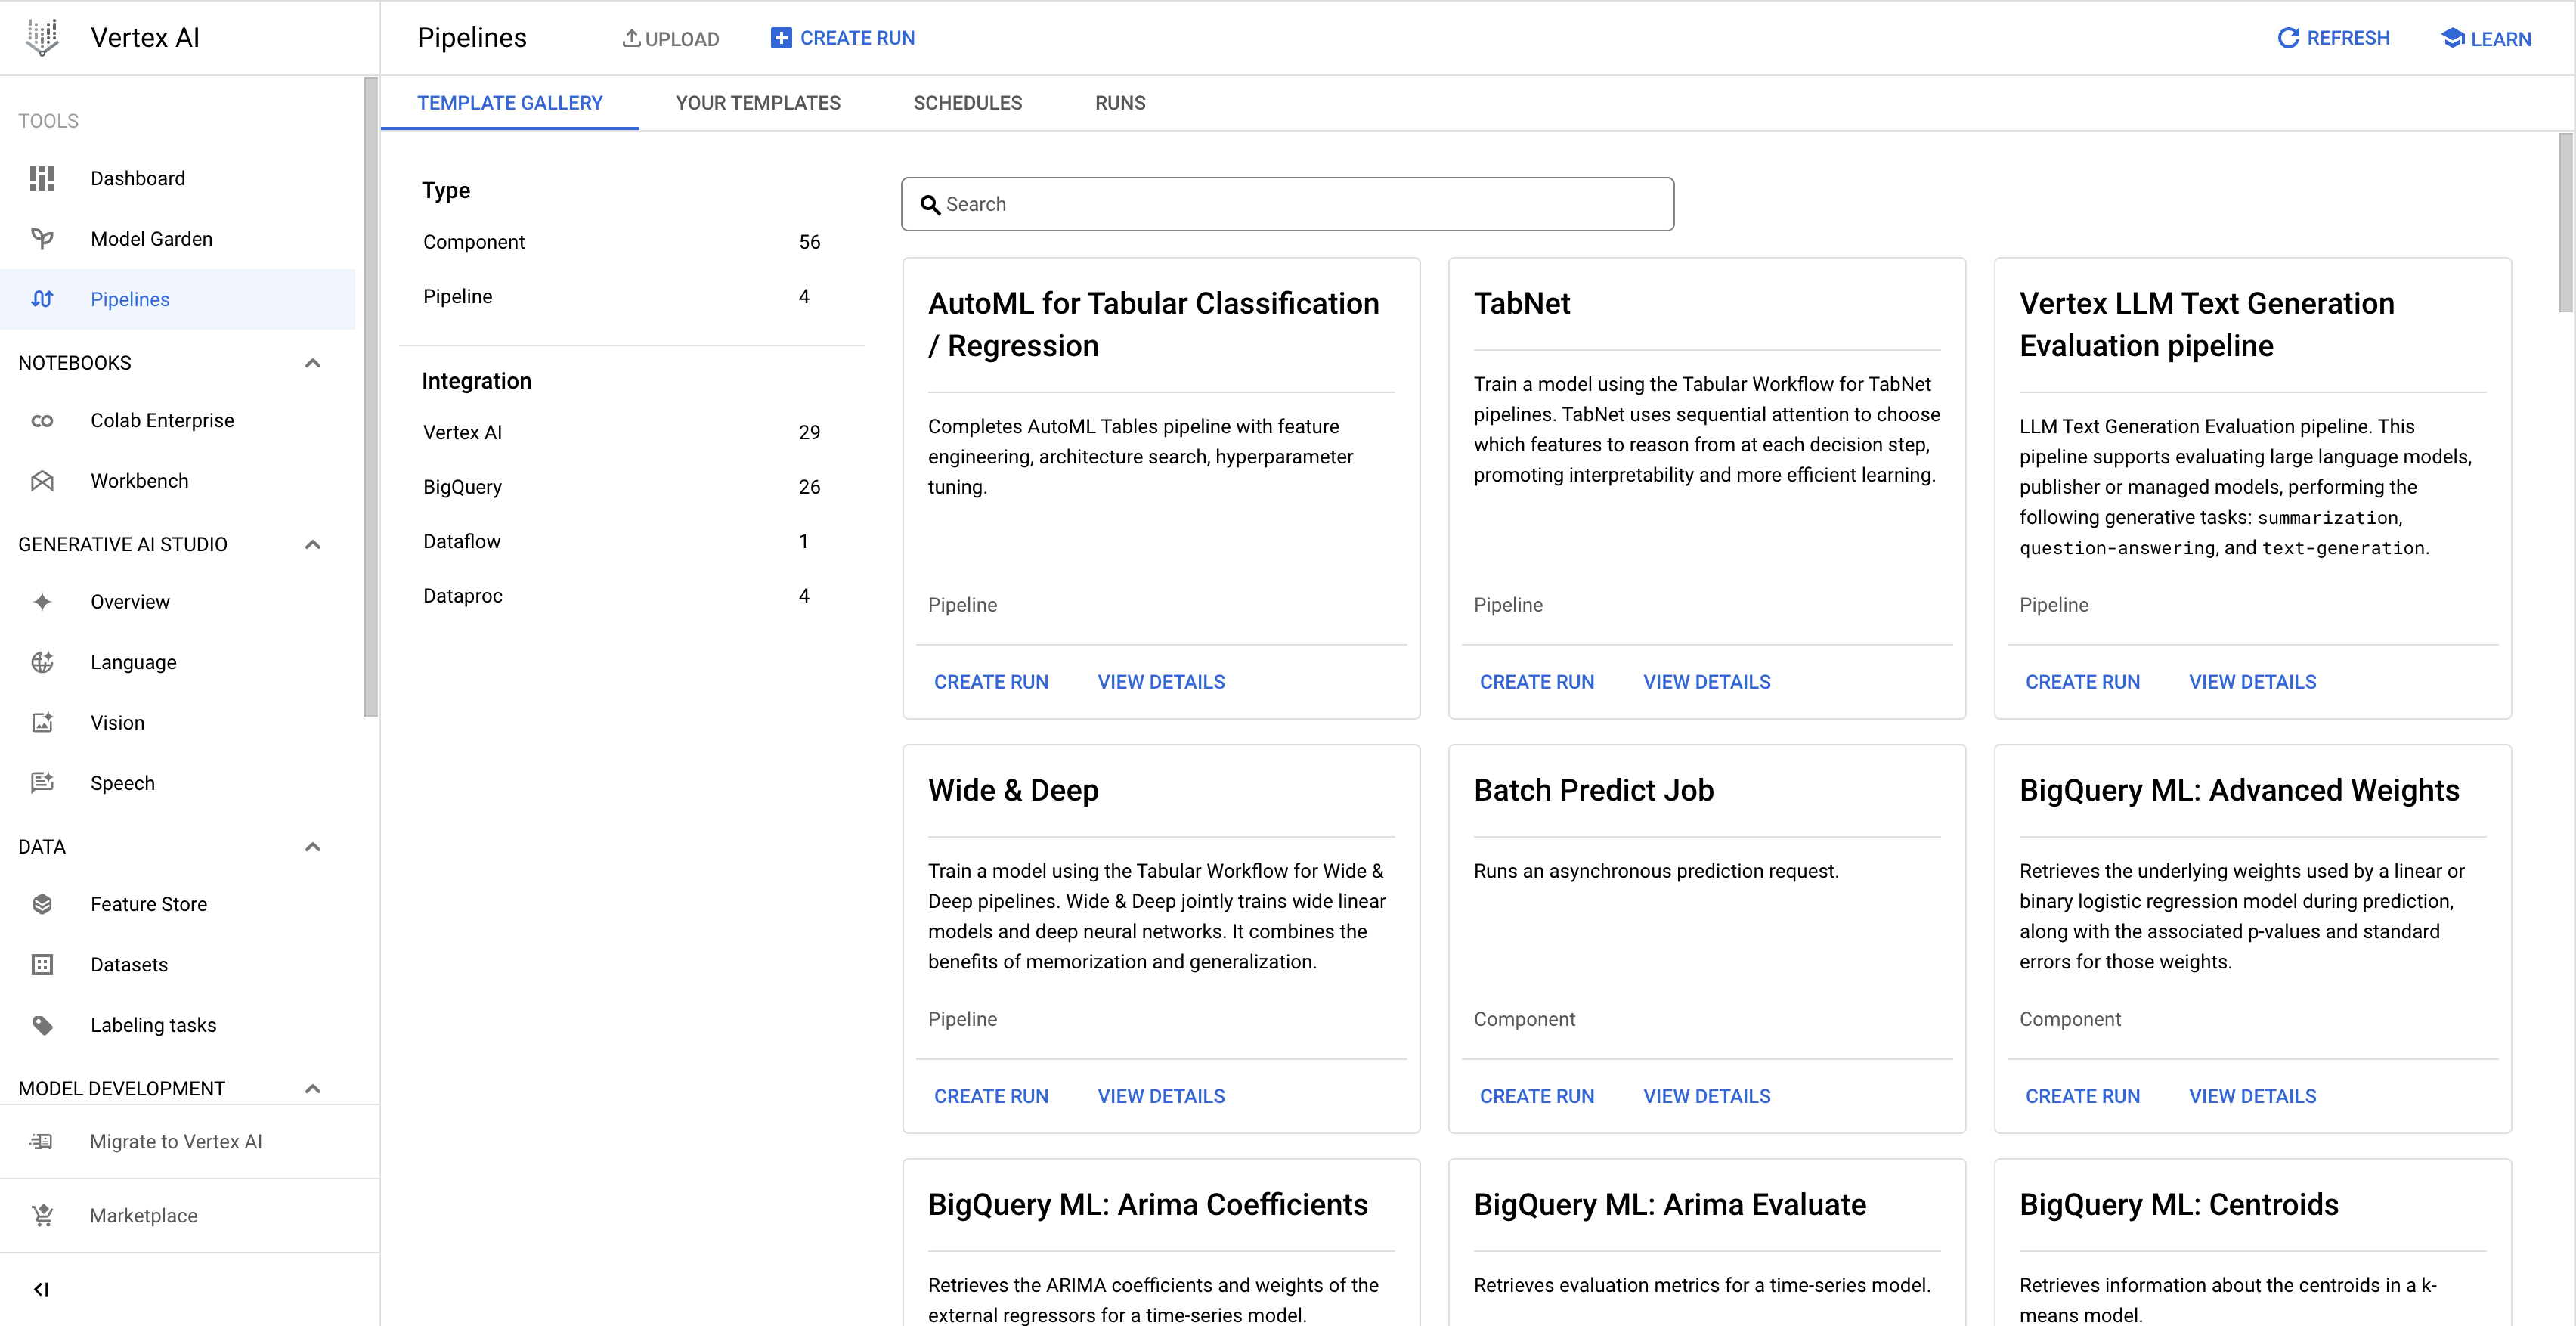 Affiche la page de la galerie de modèles contenant des modèles de pipeline élaborés par Google pour les workflows tabulaires